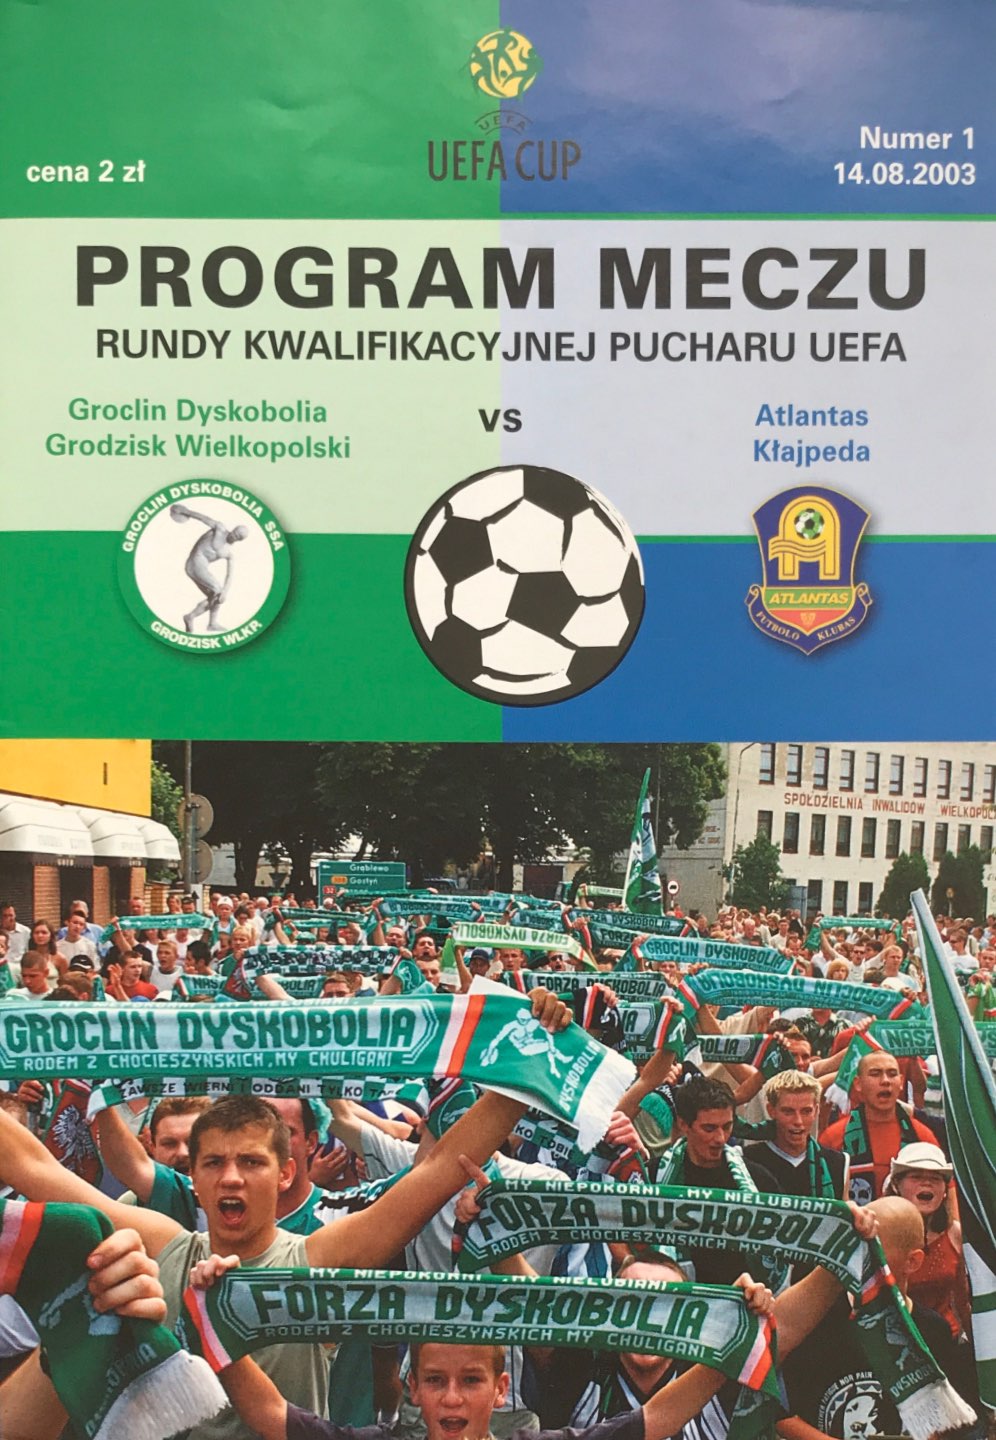 Program meczowy Groclin Dyskobolia - Atlantas Kłajpeda 2:0 (14.08.2003).